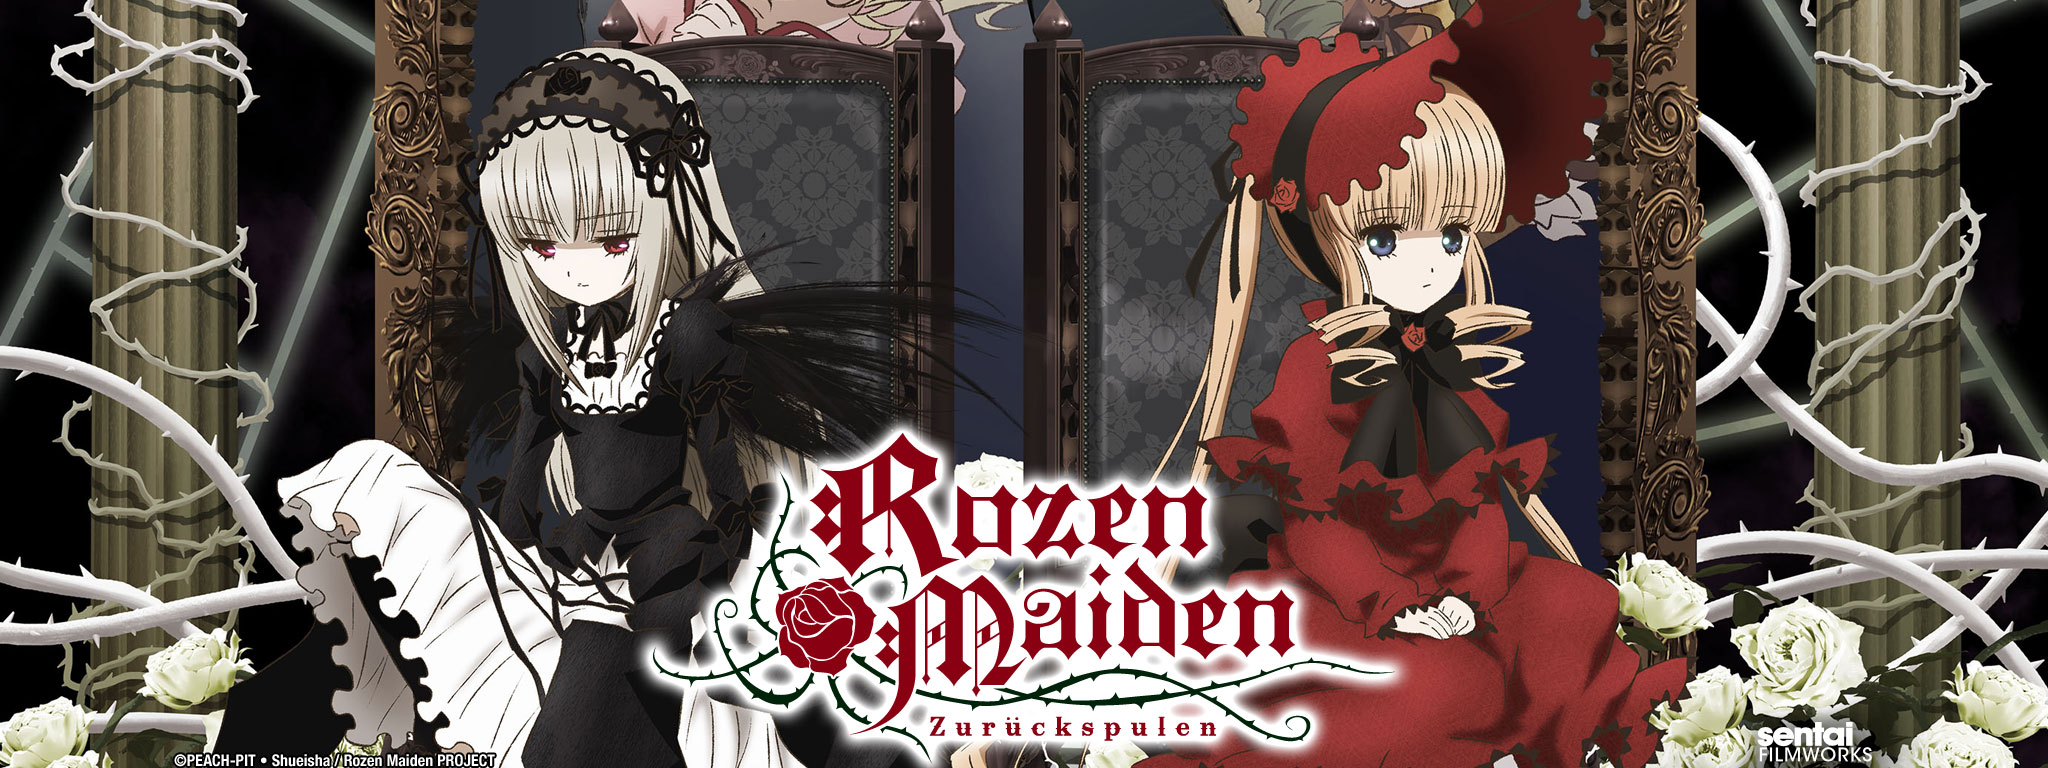 Title Art for Rozen Maiden ~ Zuruckspulen